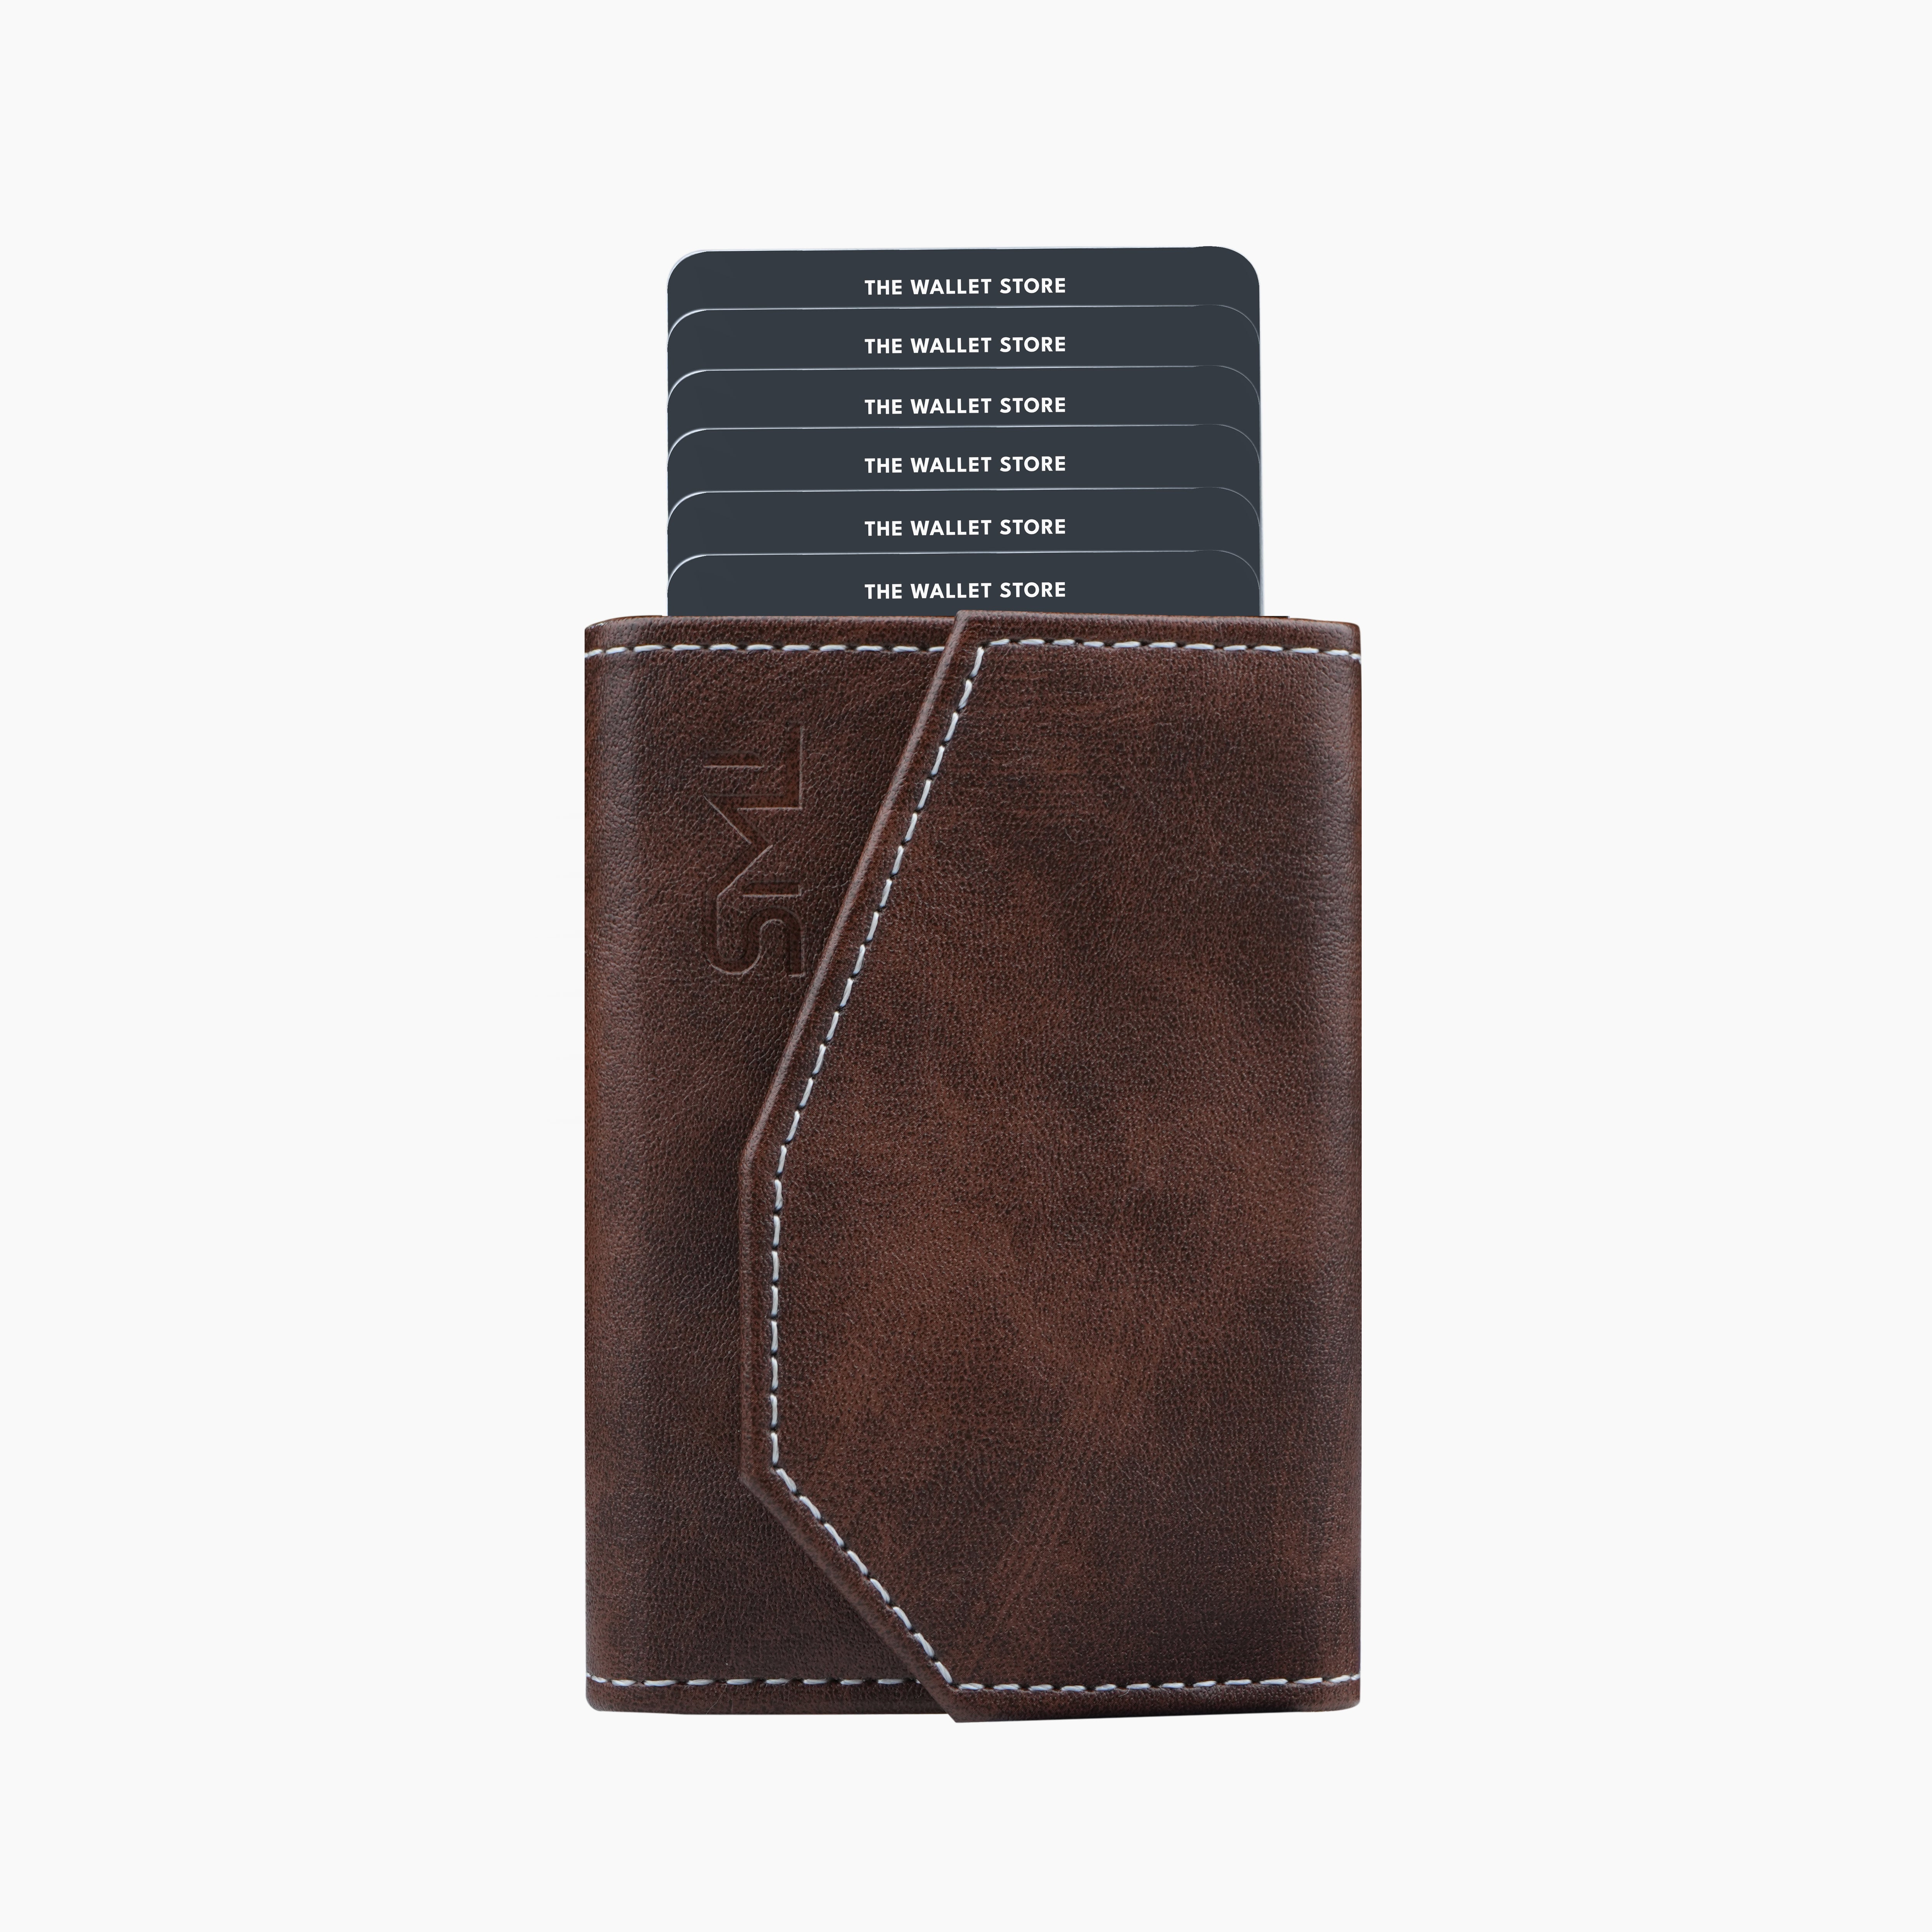 Vintage RFID Protected Wallet Card Holder - Brown